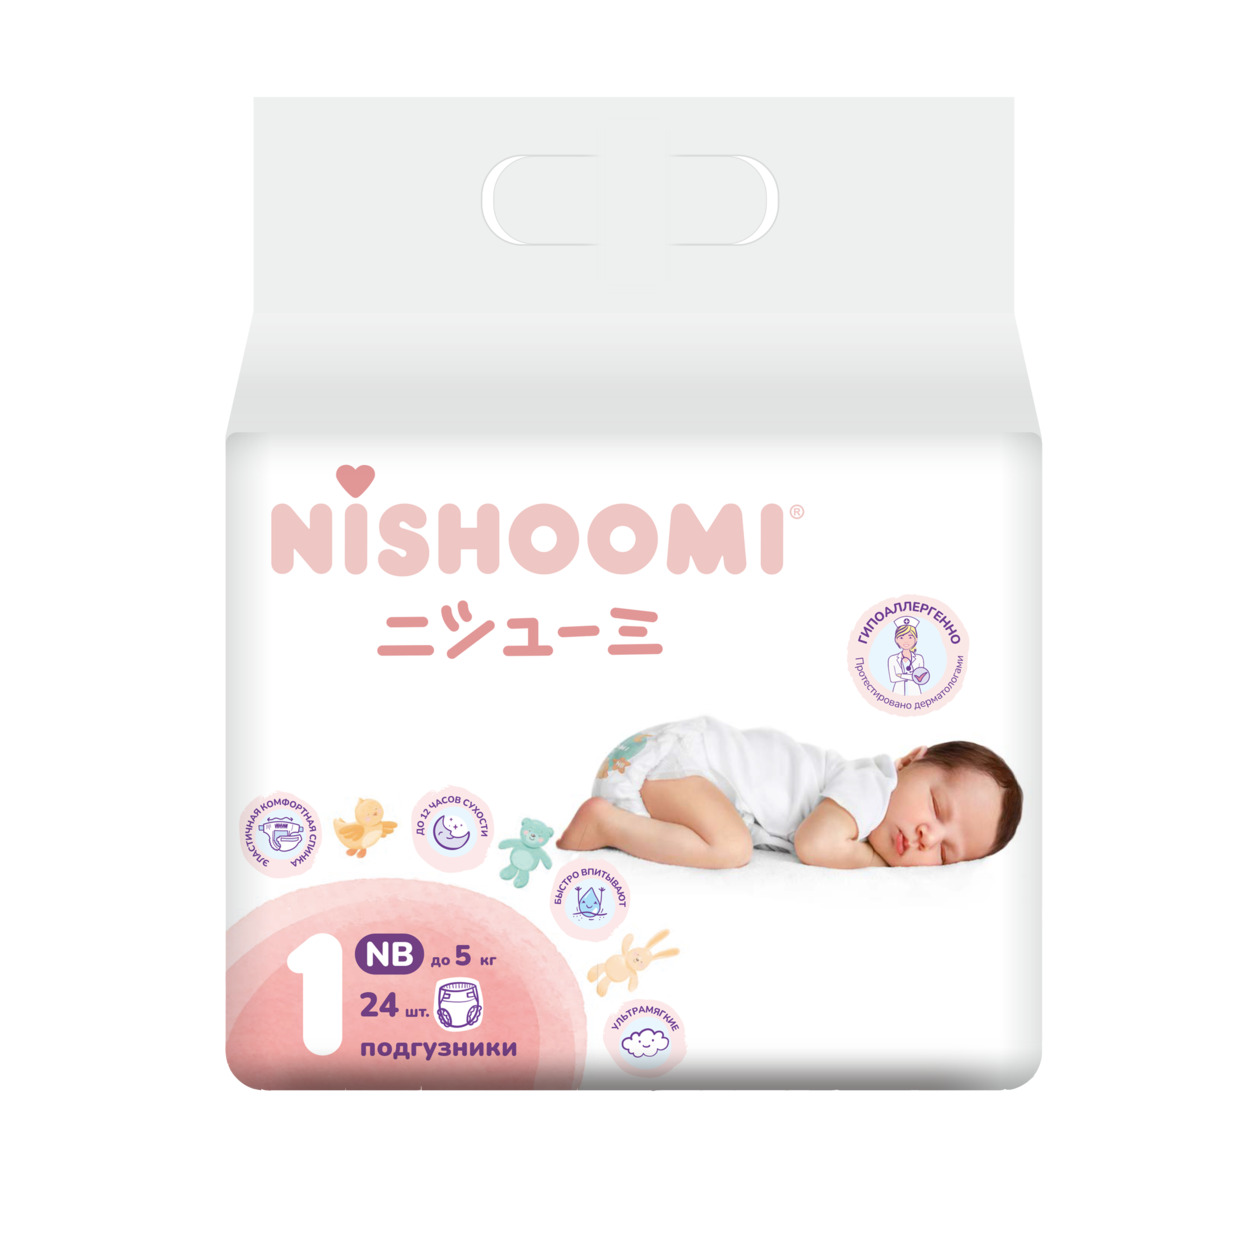 Изделия санитарно-гигиенические разового использования Nishoomi подгузники детские одноразовые. Размер Нью беби NB1 для детей весом до 5 кг, 24 штуки в уп. по акции в Пятерочке